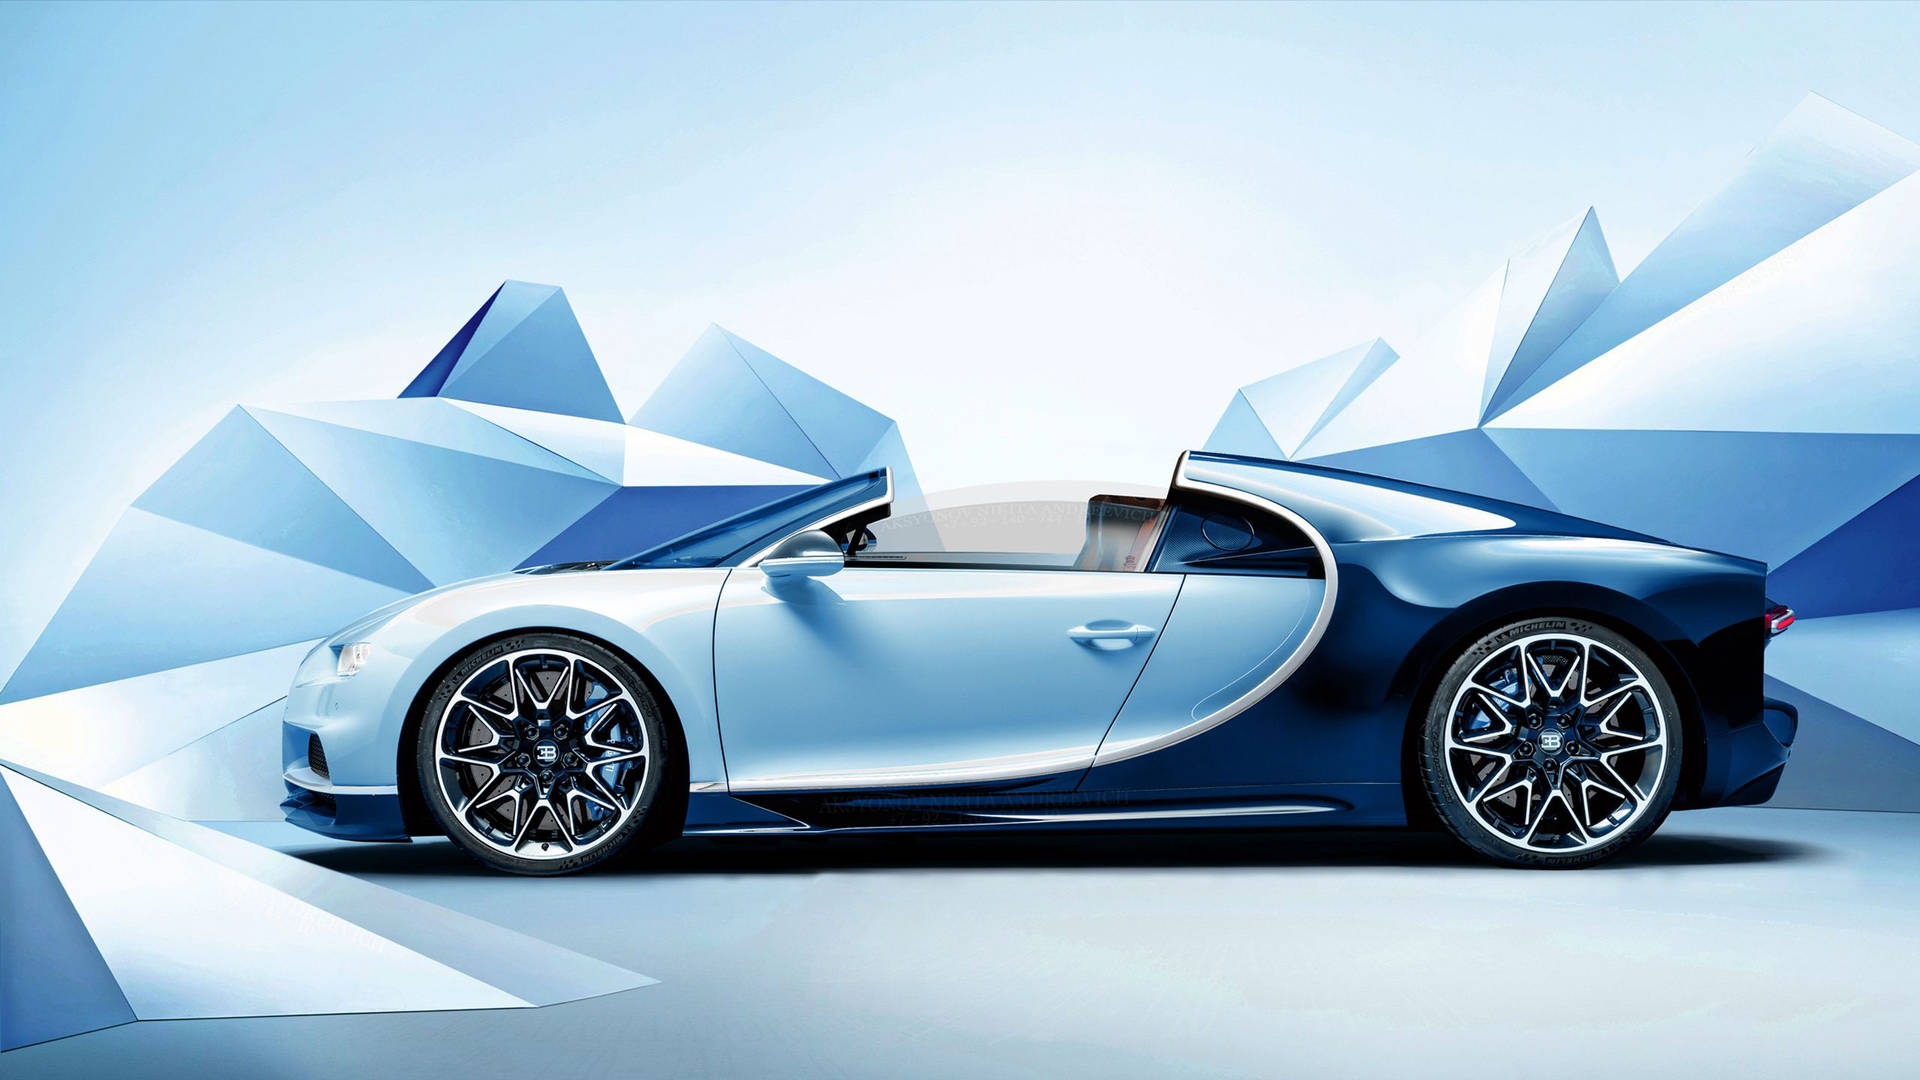 2560X1440 Bugatti Wallpaper and Background